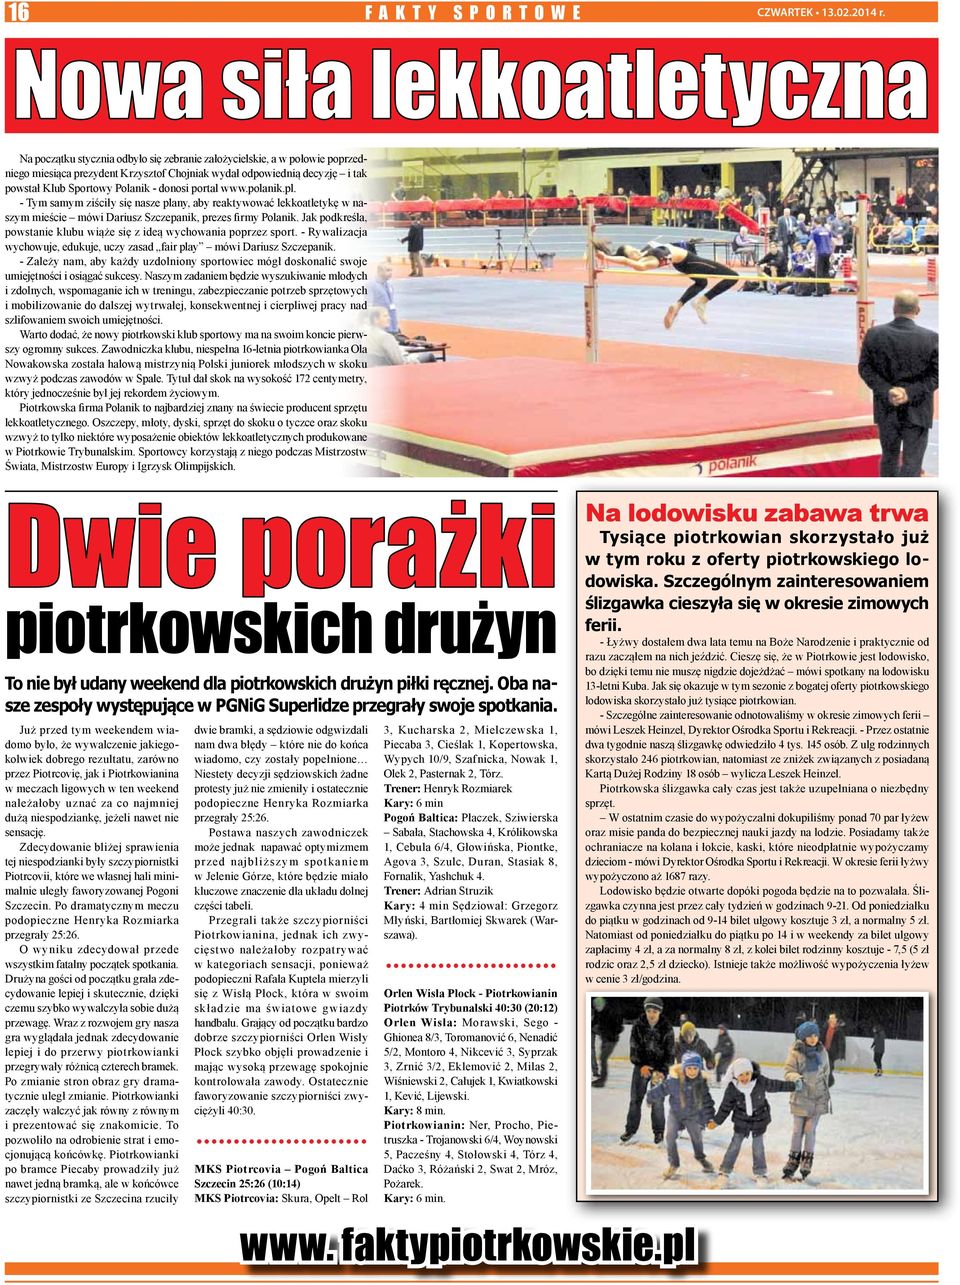 Polanik - donosi portal www.polanik.pl. - Tym samym ziściły się nasze plany, aby reaktywować lekkoatletykę w naszym mieście mówi Dariusz Szczepanik, prezes firmy Polanik.